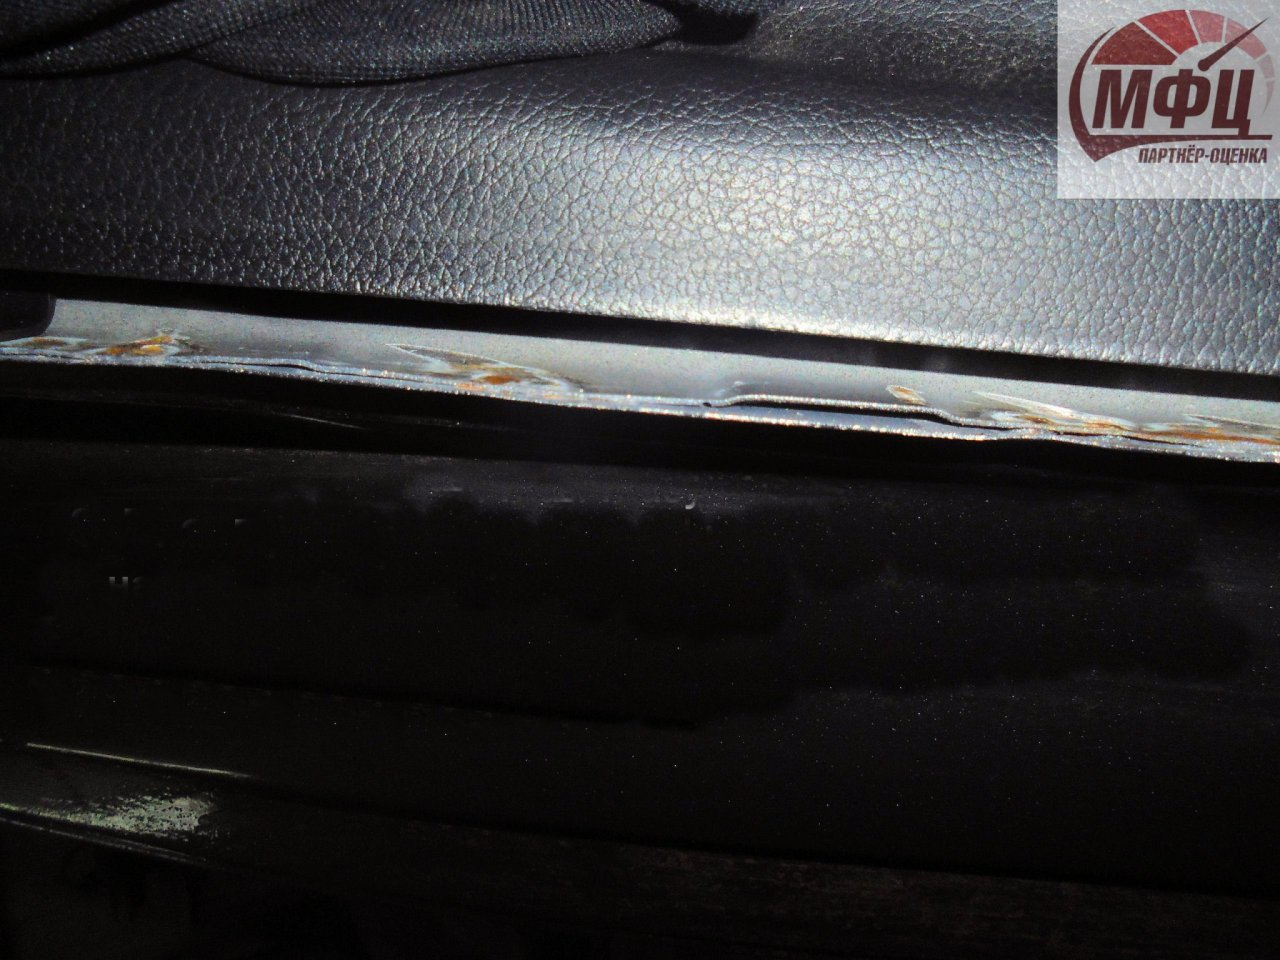 Сыктывкарский водитель рассказал, как после ремонта на СТО с его машины стала отваливаться краска (фото)